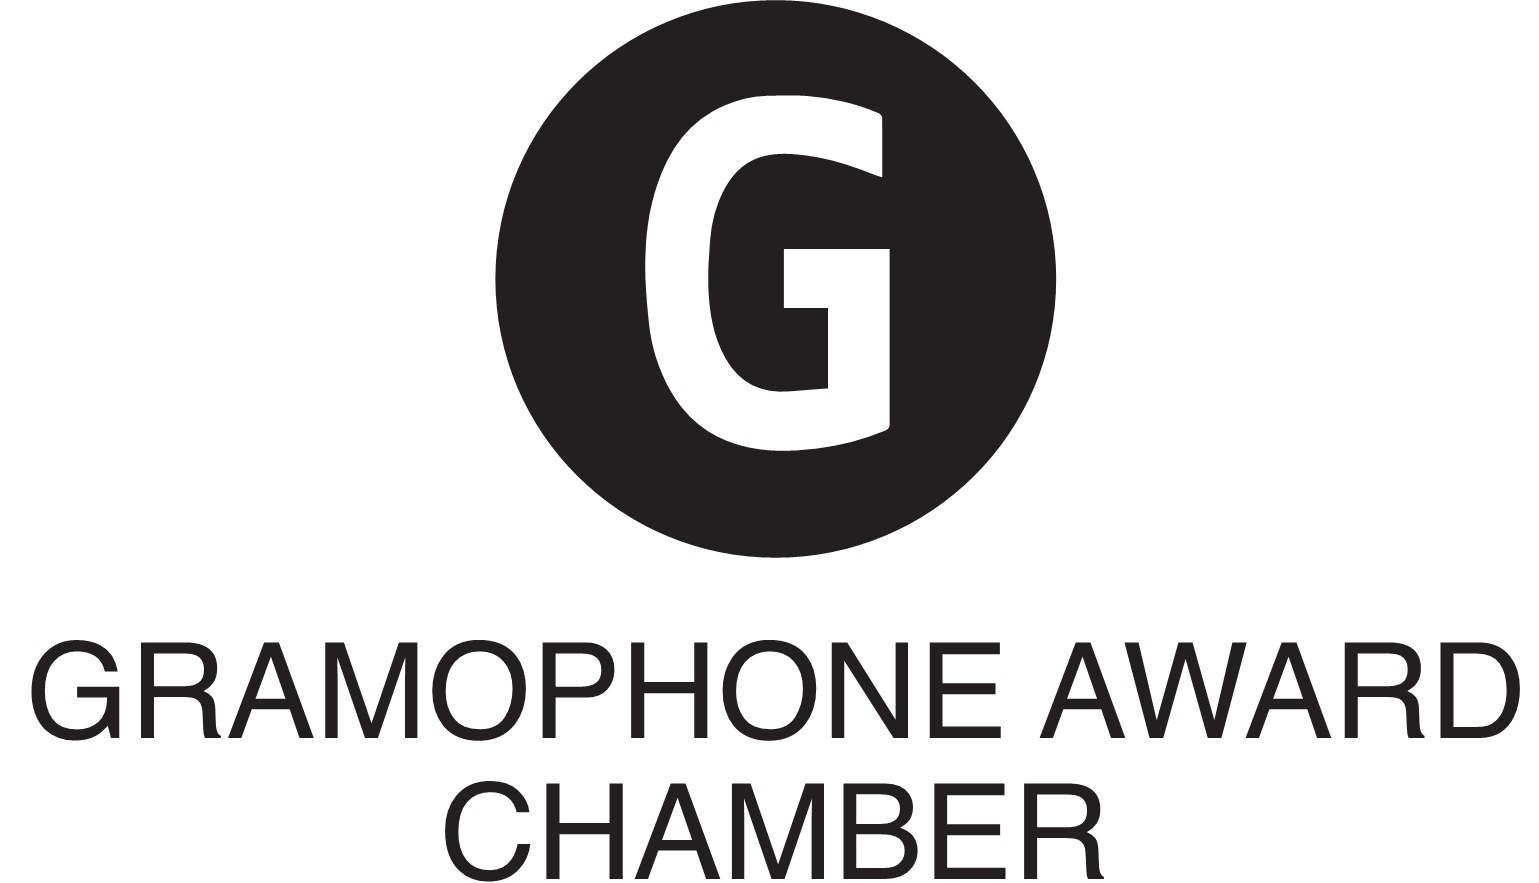 Gramophone: 'Chamber Award - Winner' (2020)